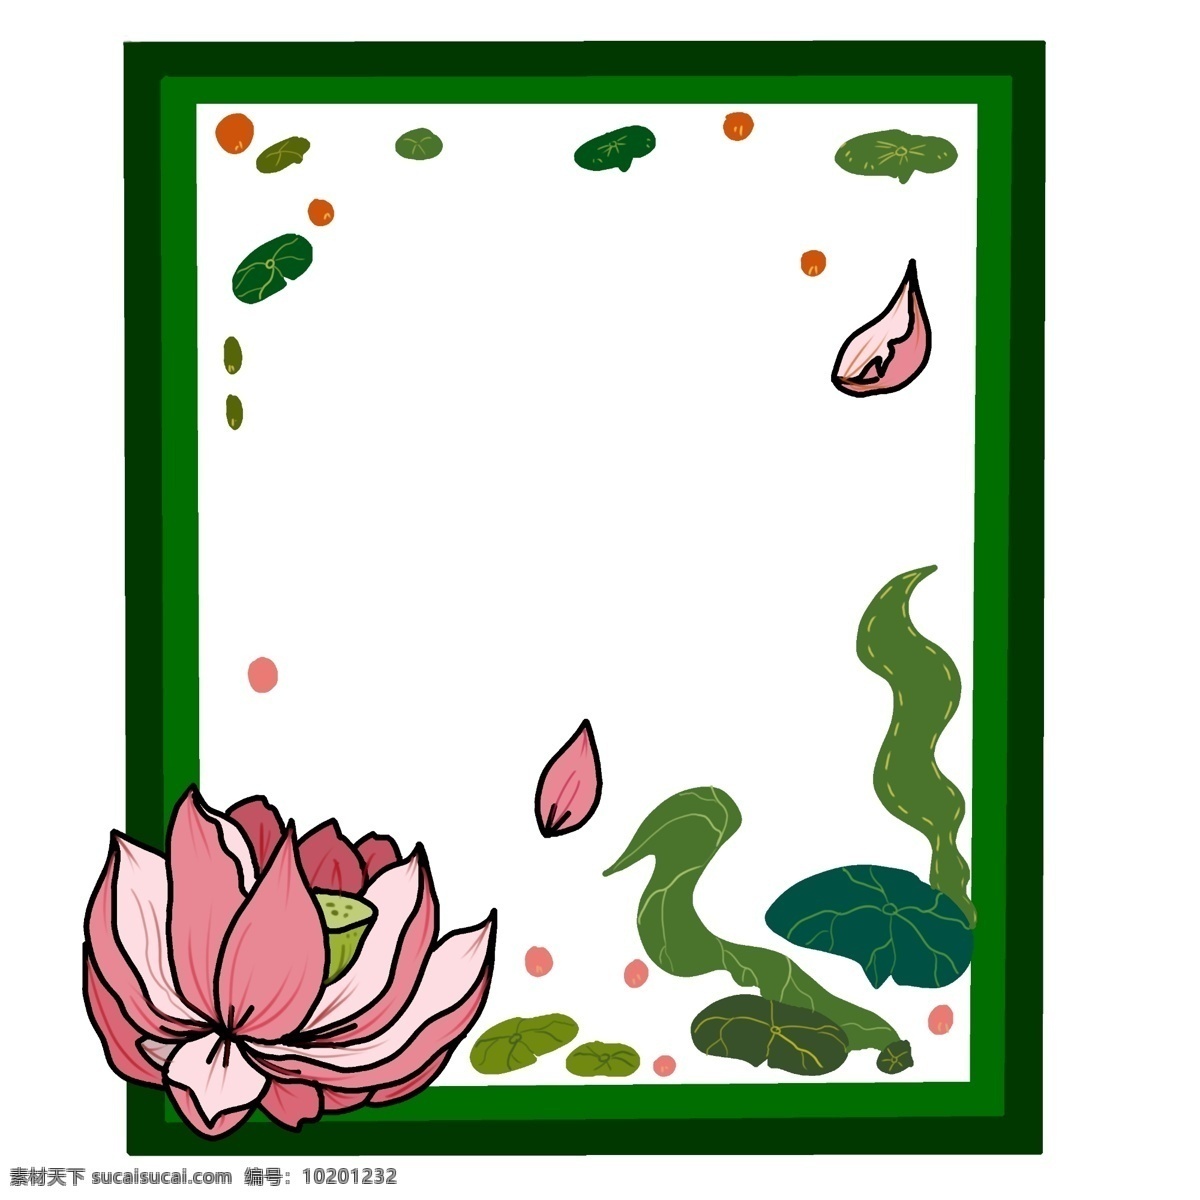 夏季 荷花 荷叶 手绘 边框 粉色 绿色 中国风 小清新 植物 水果 免扣边框 绿色边框